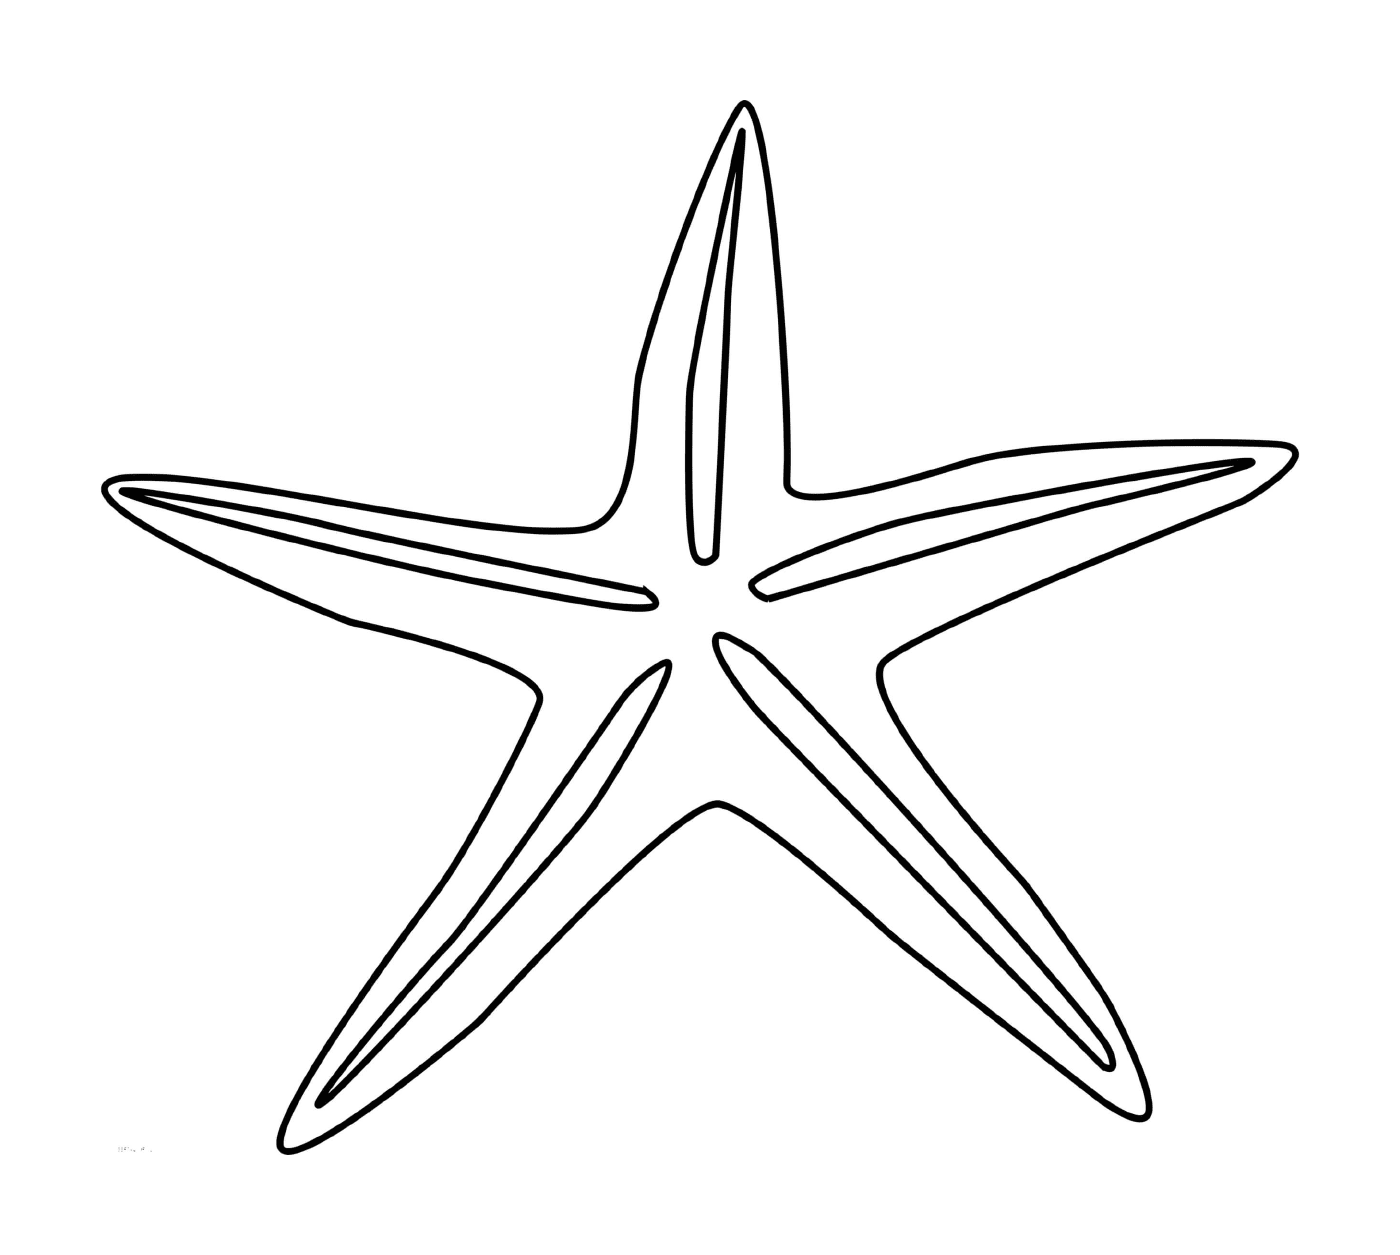  Uma estrela do mar simples e fácil de desenhar 